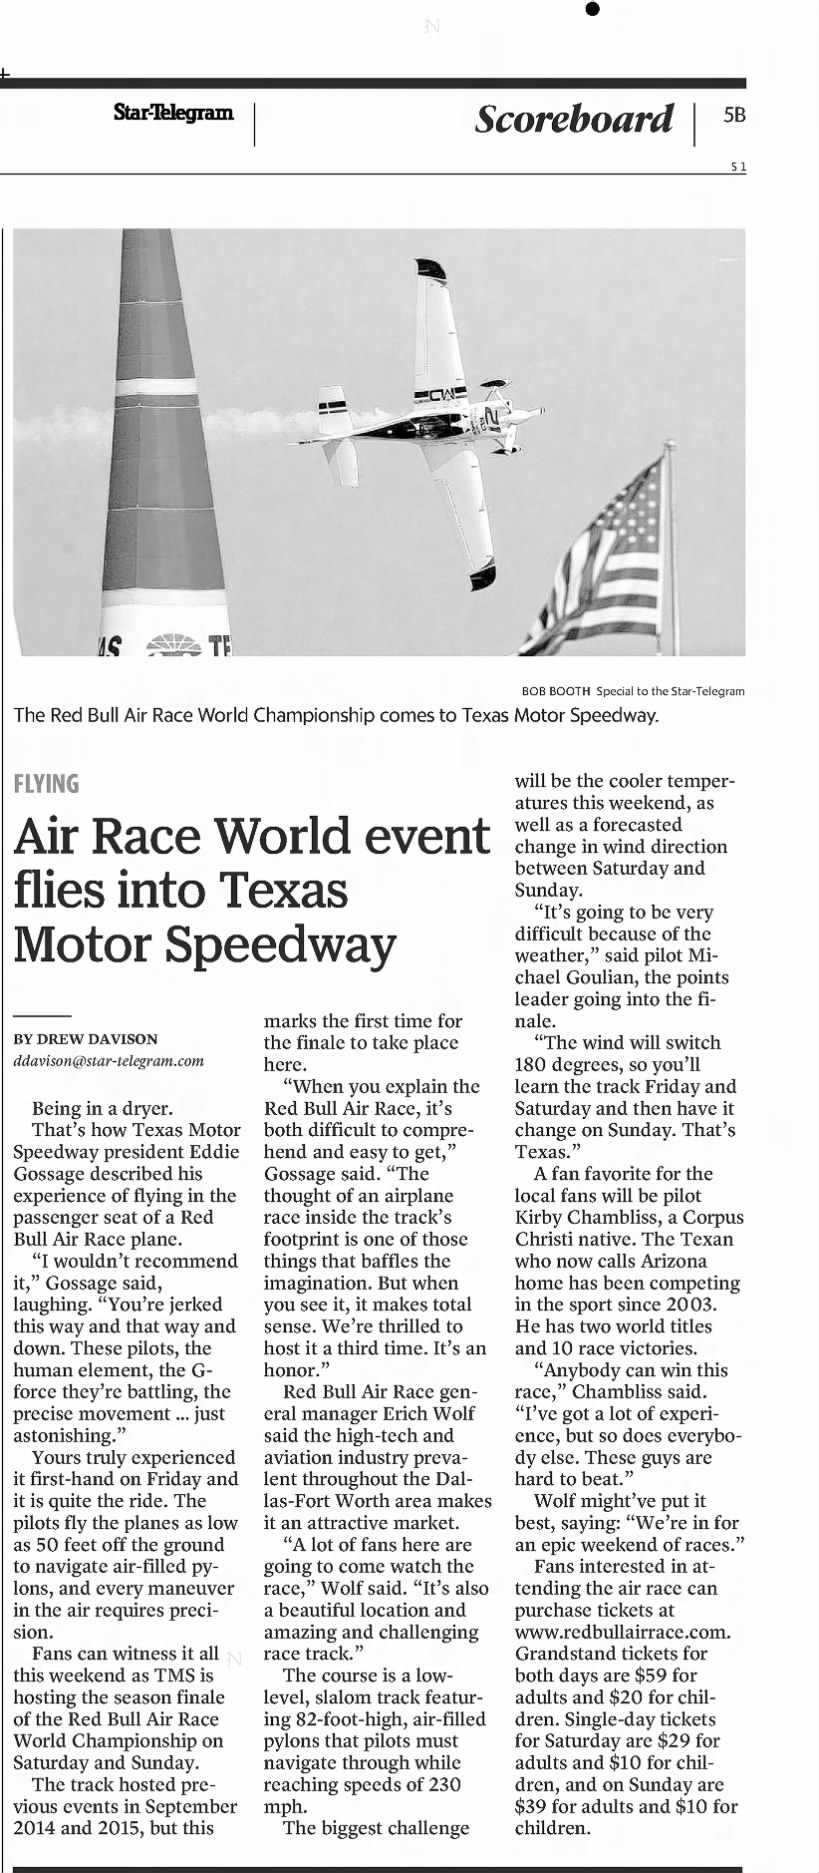 Air Race World event flies into Texas Motor Speedway